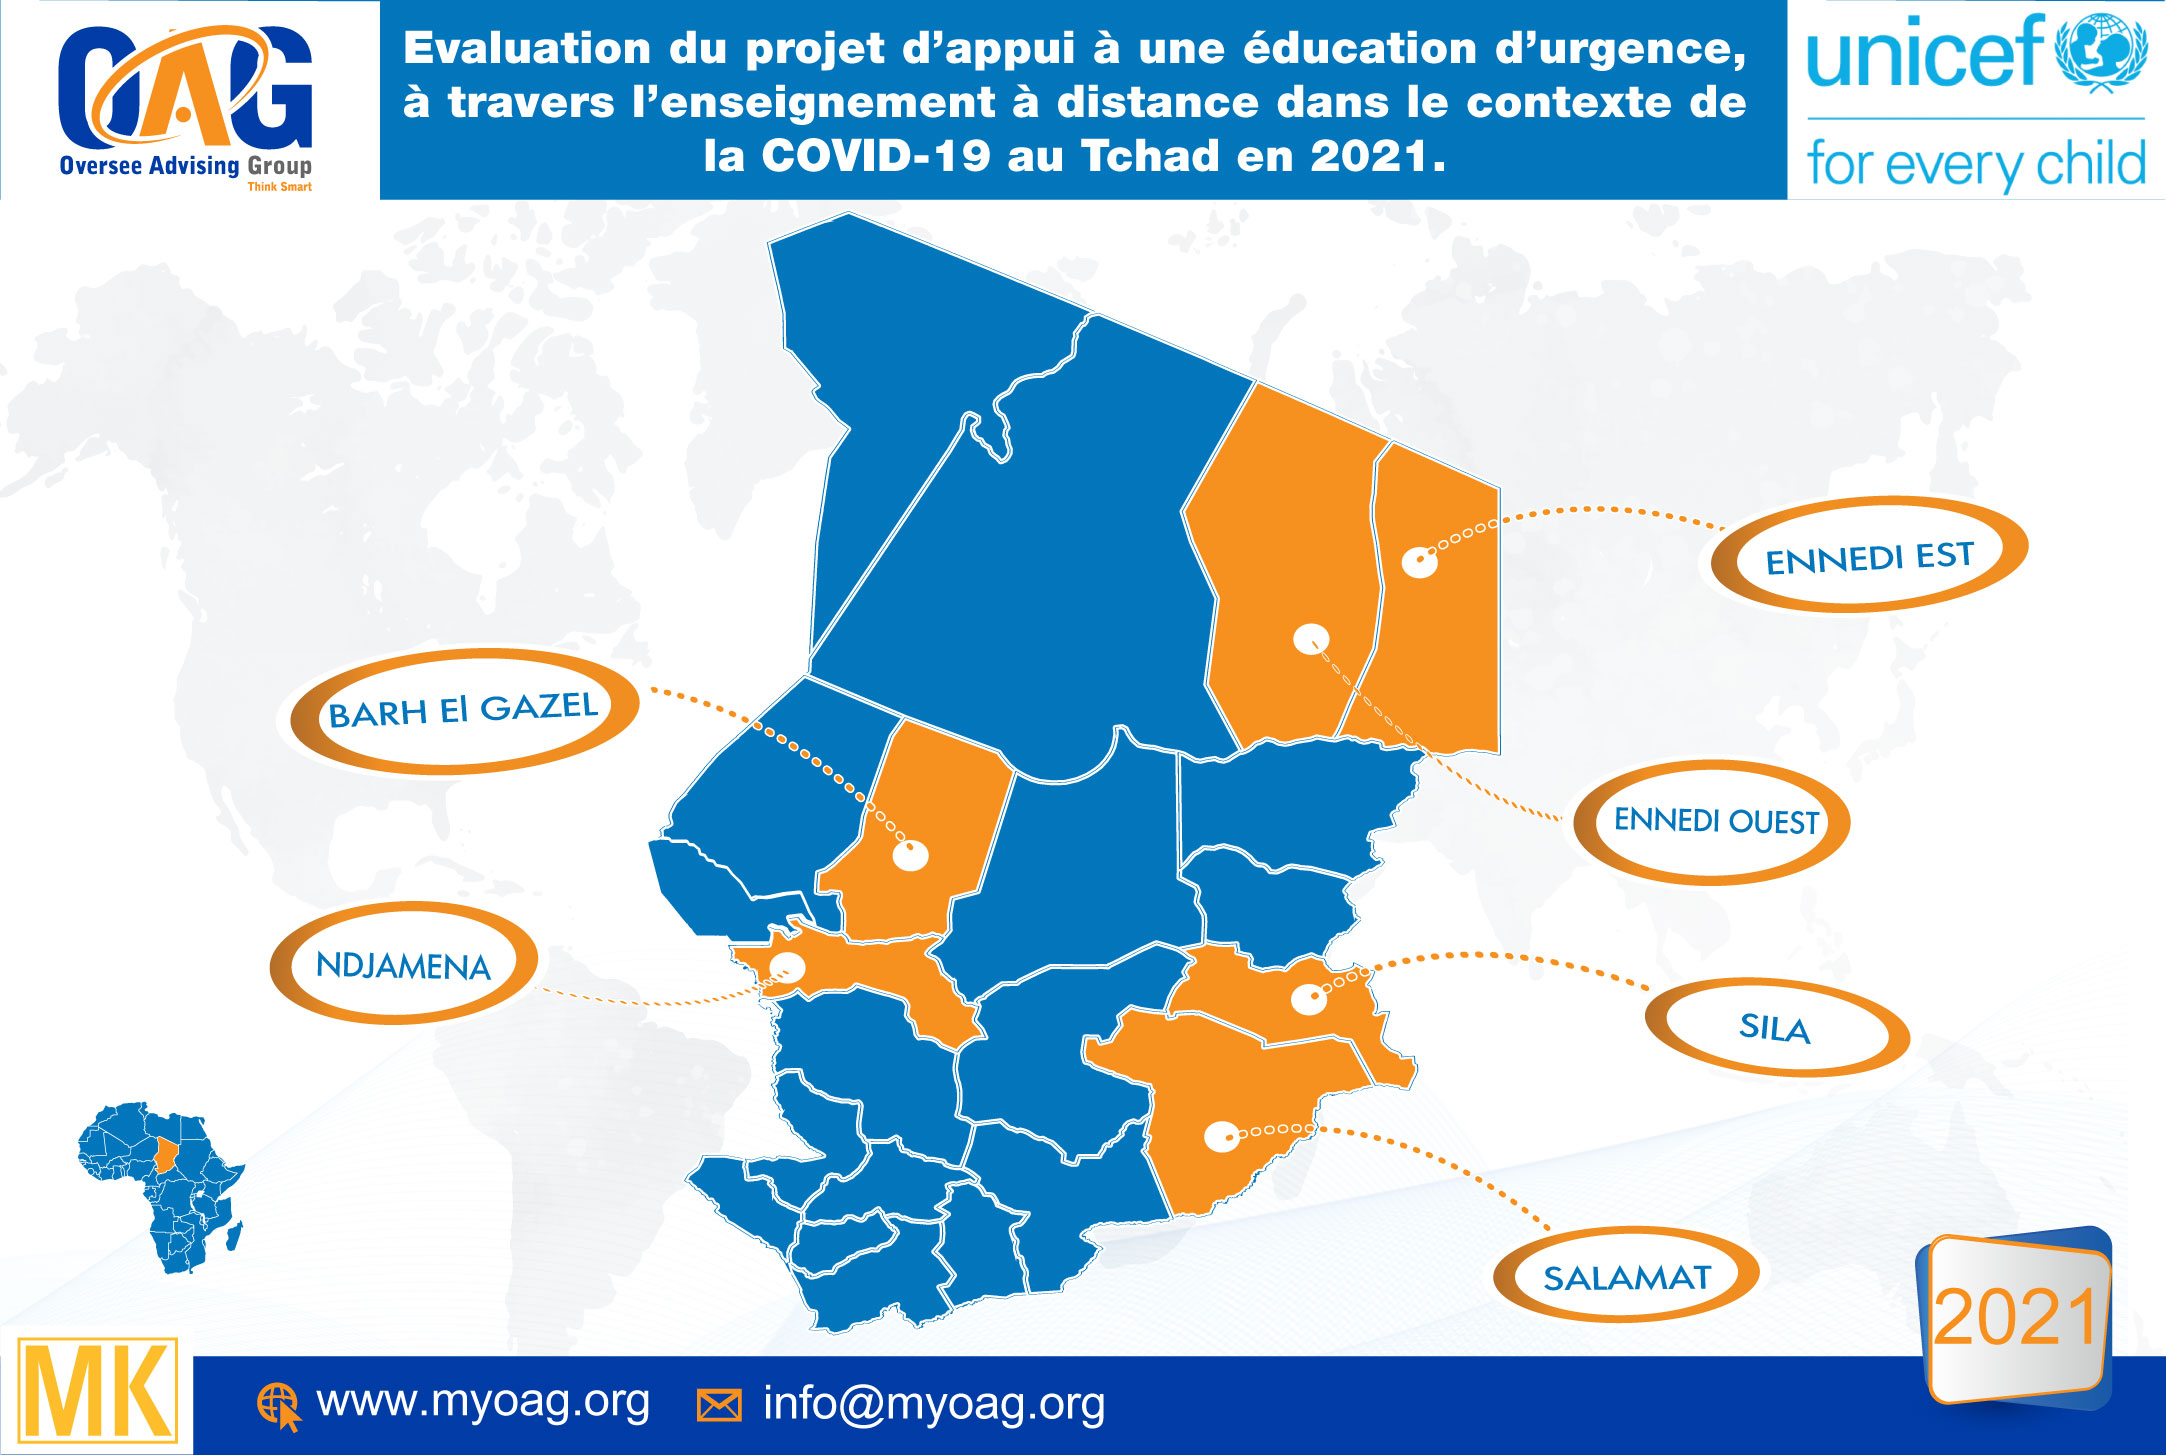 Tchad : UNICEF choisit OAG pour la réalisation de l’évaluation de l’éducation à distance en période COVID19